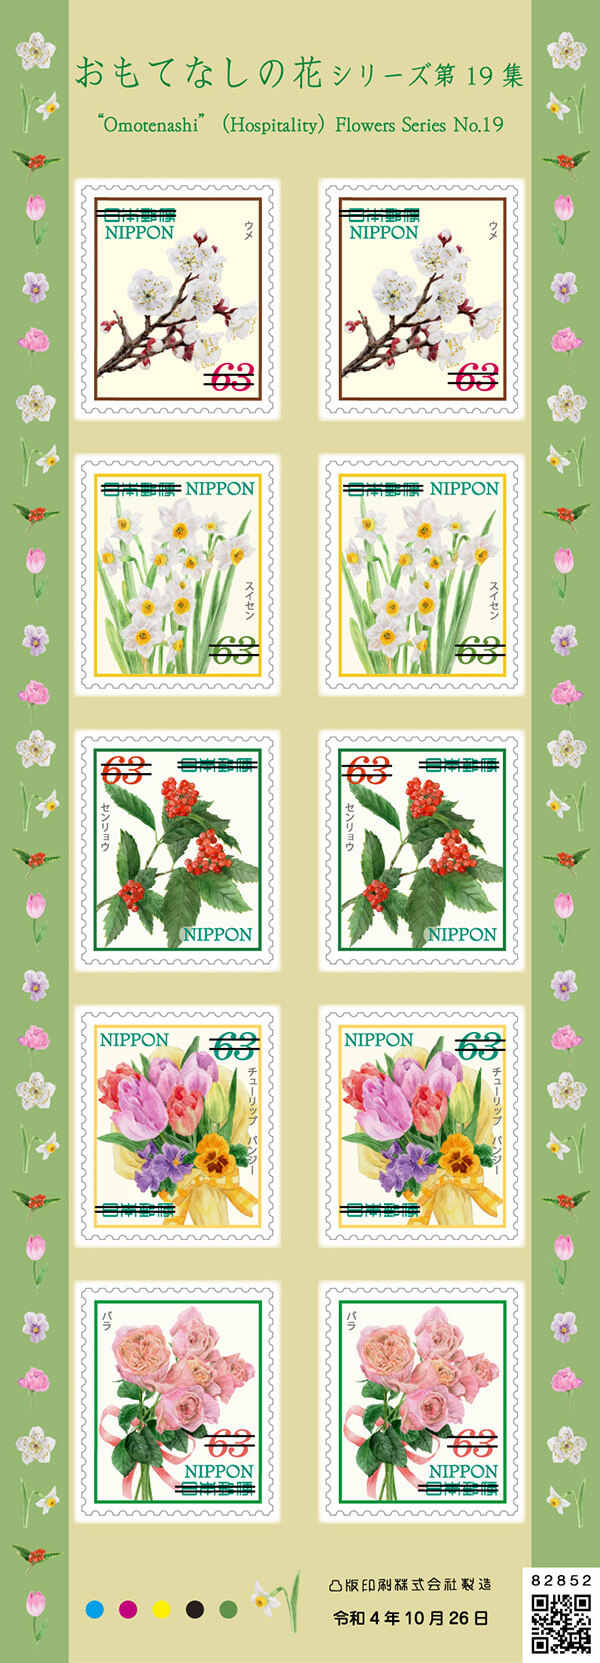 63円郵便切手（シール式）